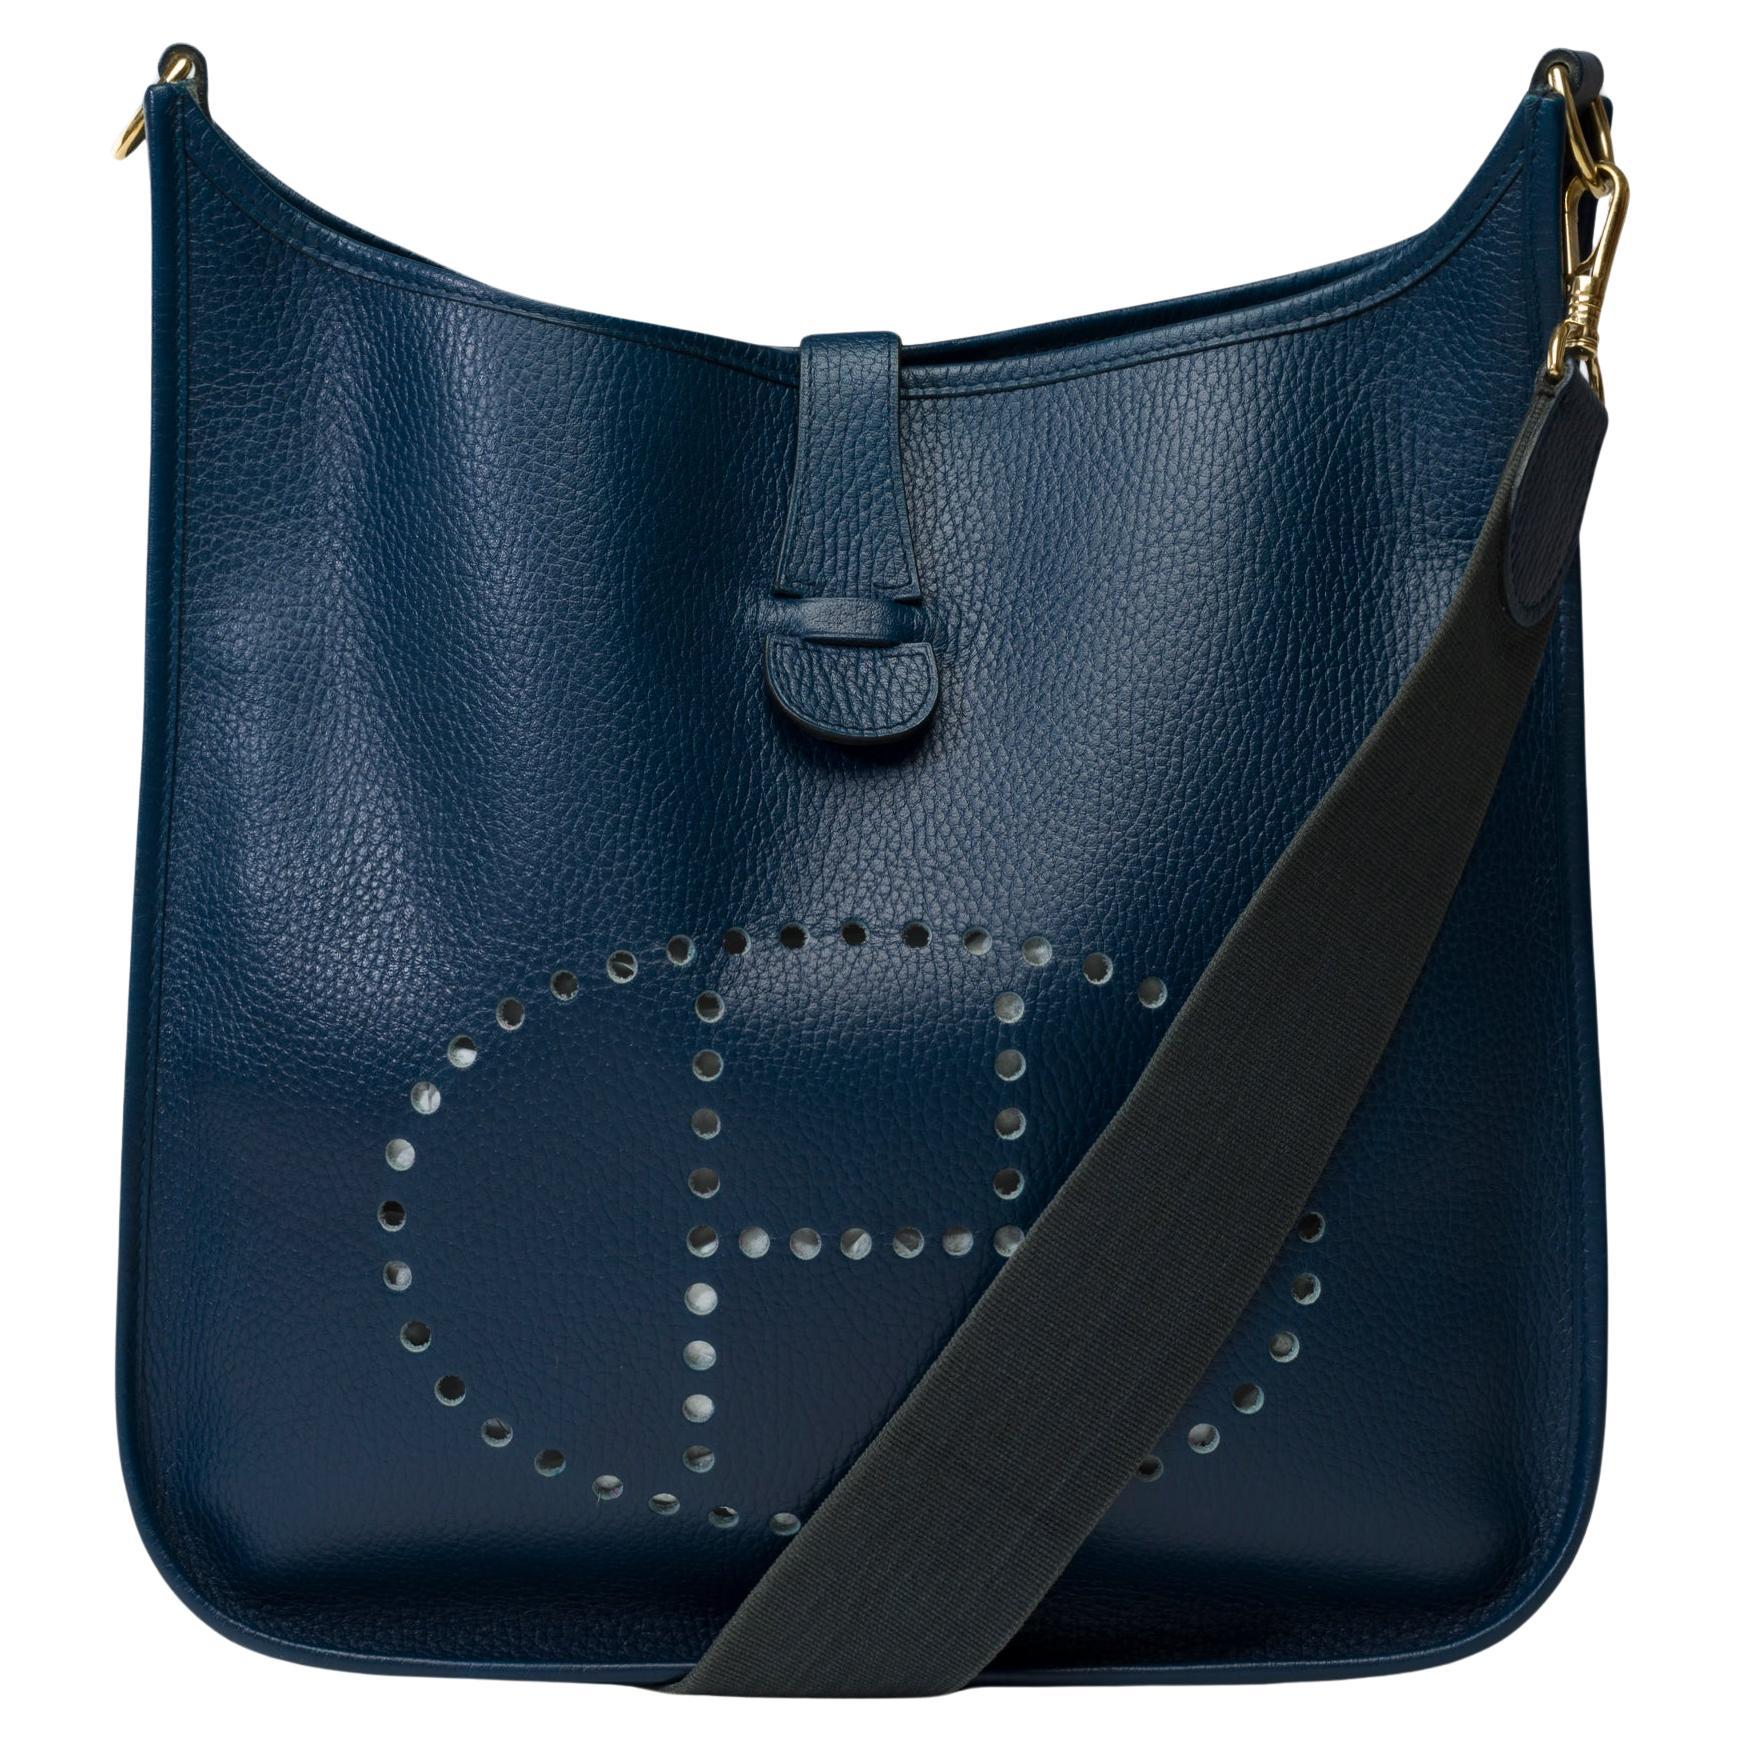 Hermès Evelyne GM  shoulder bag in Navy Blue Taurillon Clemence leather, GHW For Sale